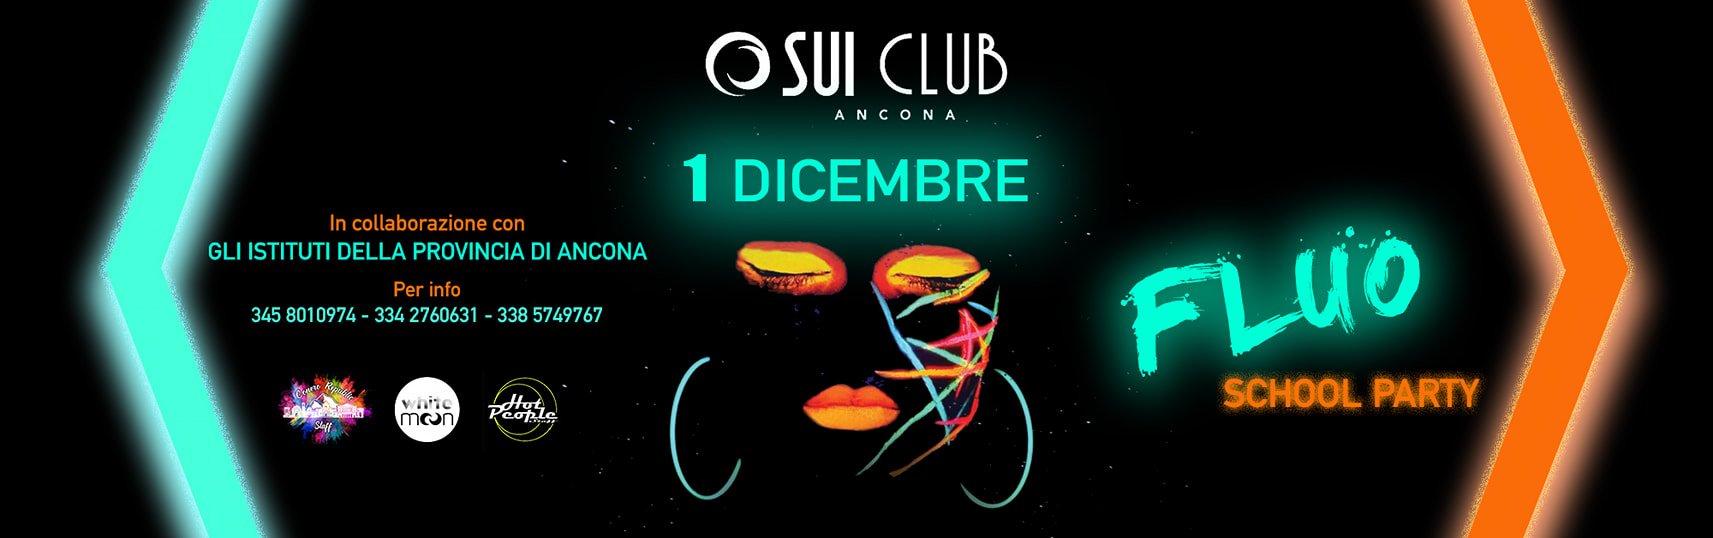 Fluo School Party Sui Club Ancona